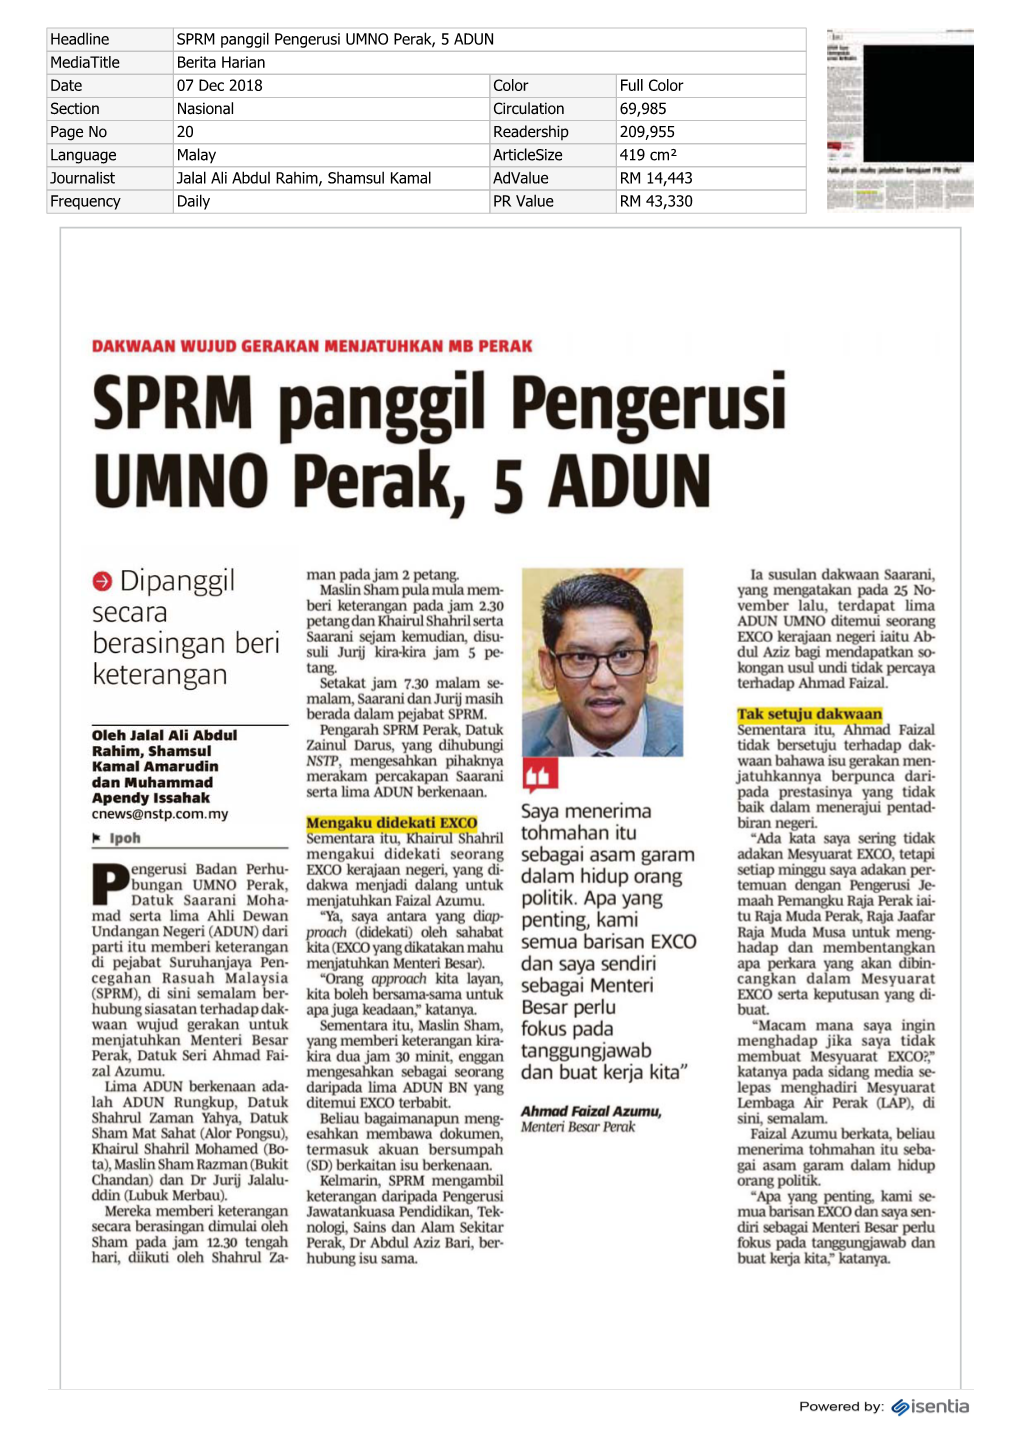 SPRM Panggil Pengerusi UMNO Perak, 5 ADUN